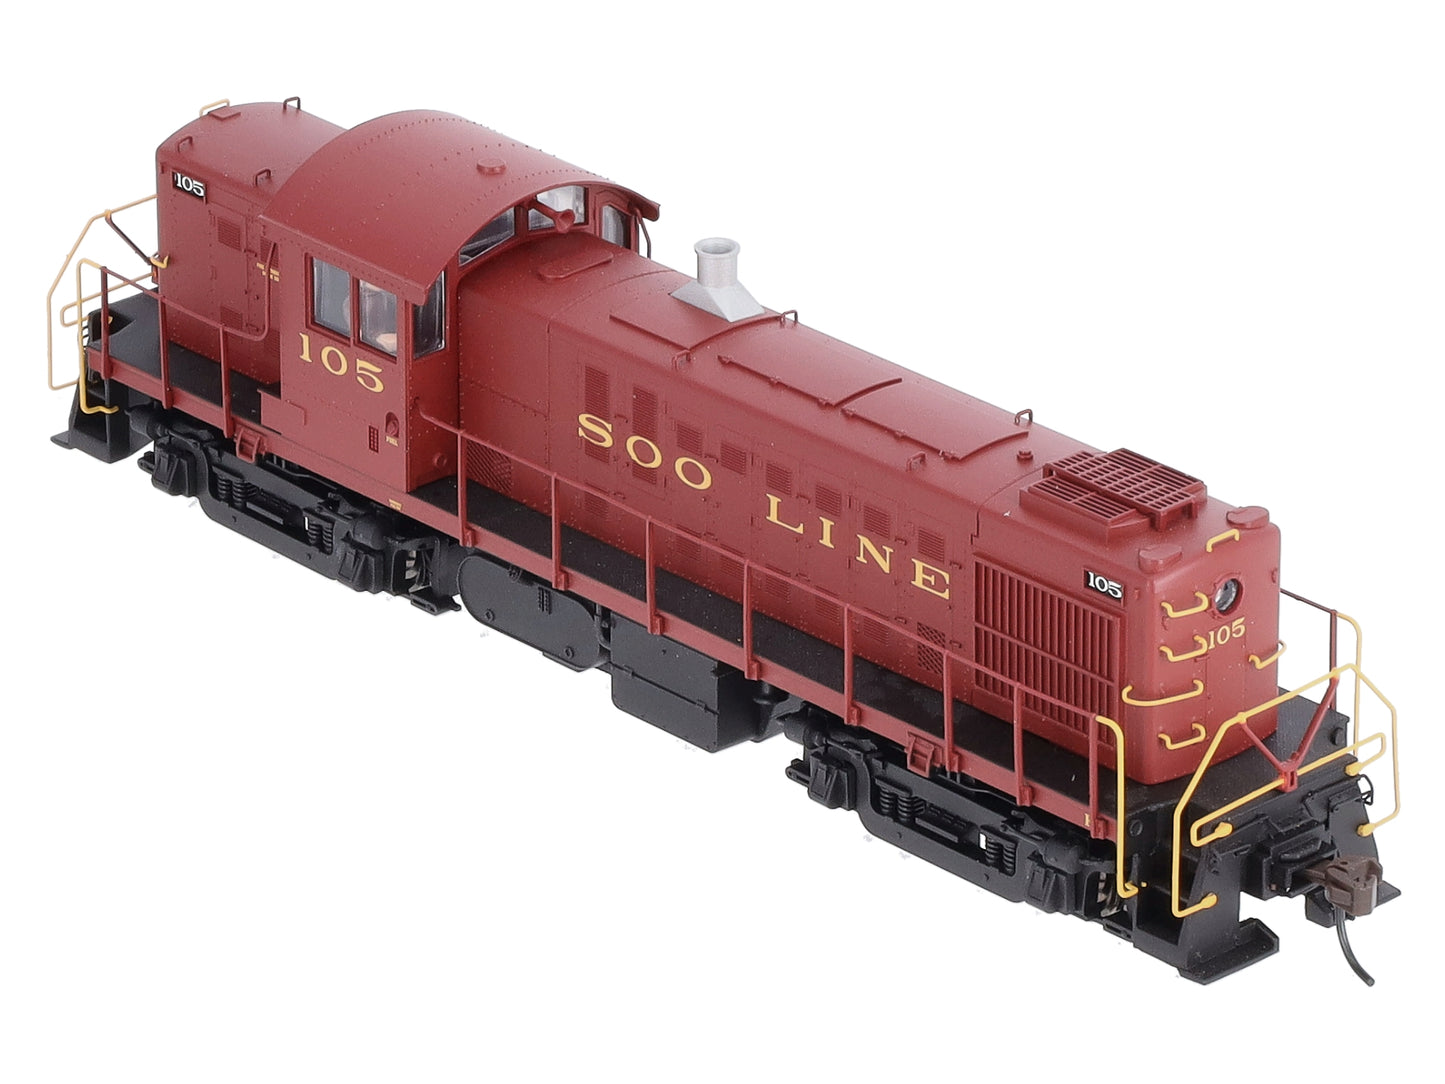 Atlas 10001442 HO Soo Line RS-1 Diesel Locomotive #105